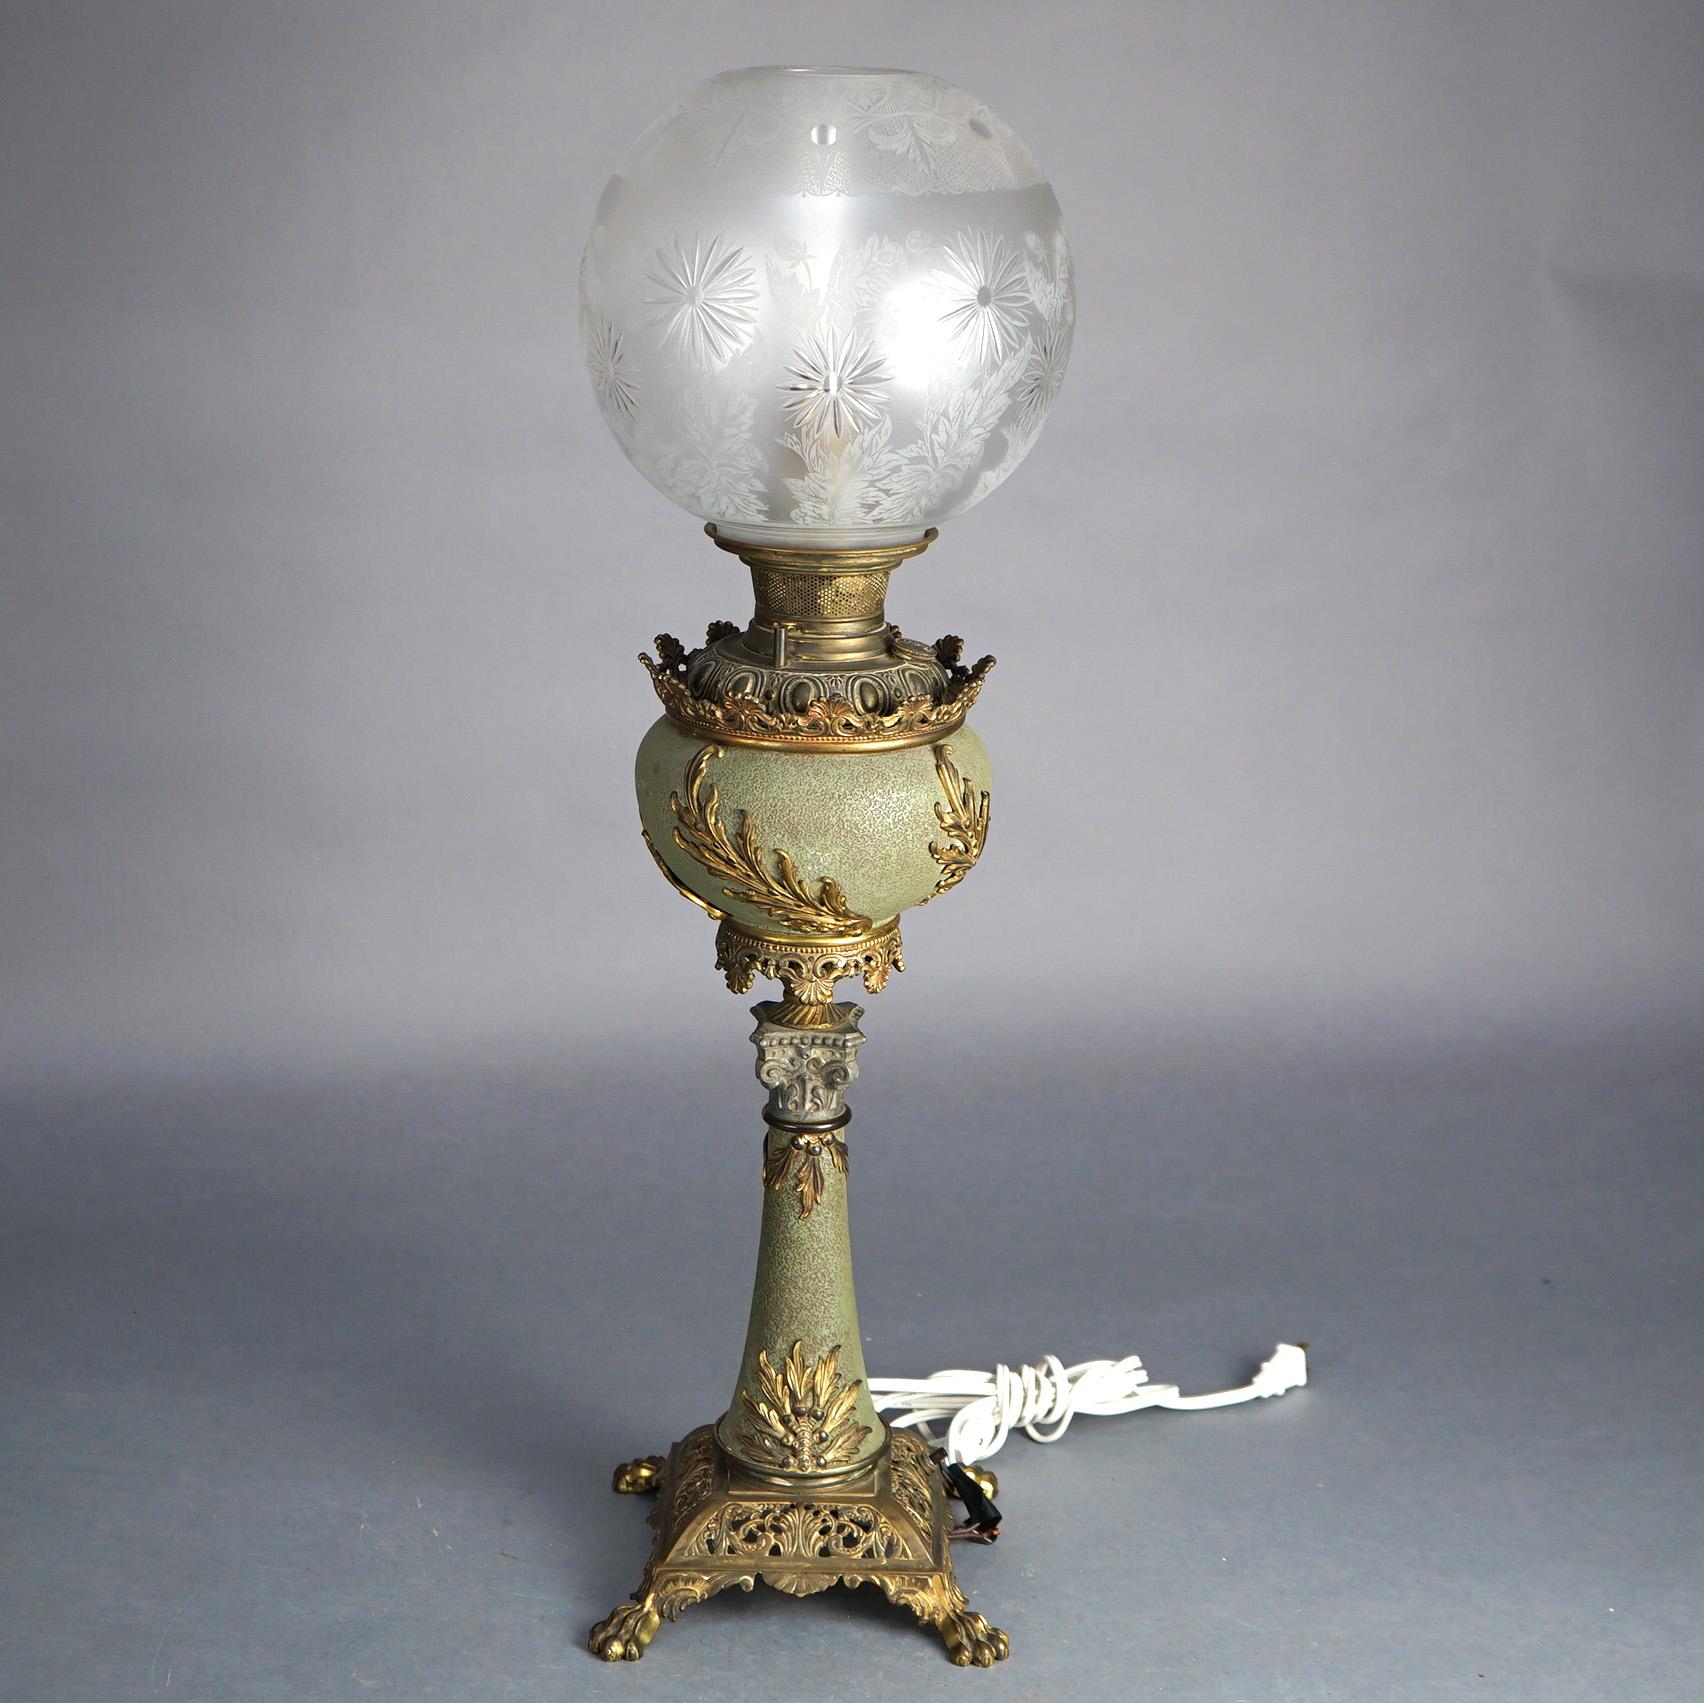 Antike Bradley & Hubbard Klassische Messing-Salonlampe mit Sockel mit Grünspan-Finish, Blattelementen und geätztem Glasschirm, elektrifiziert, um 1890

Maße: 31''H x 8,5''B x 8,5''D